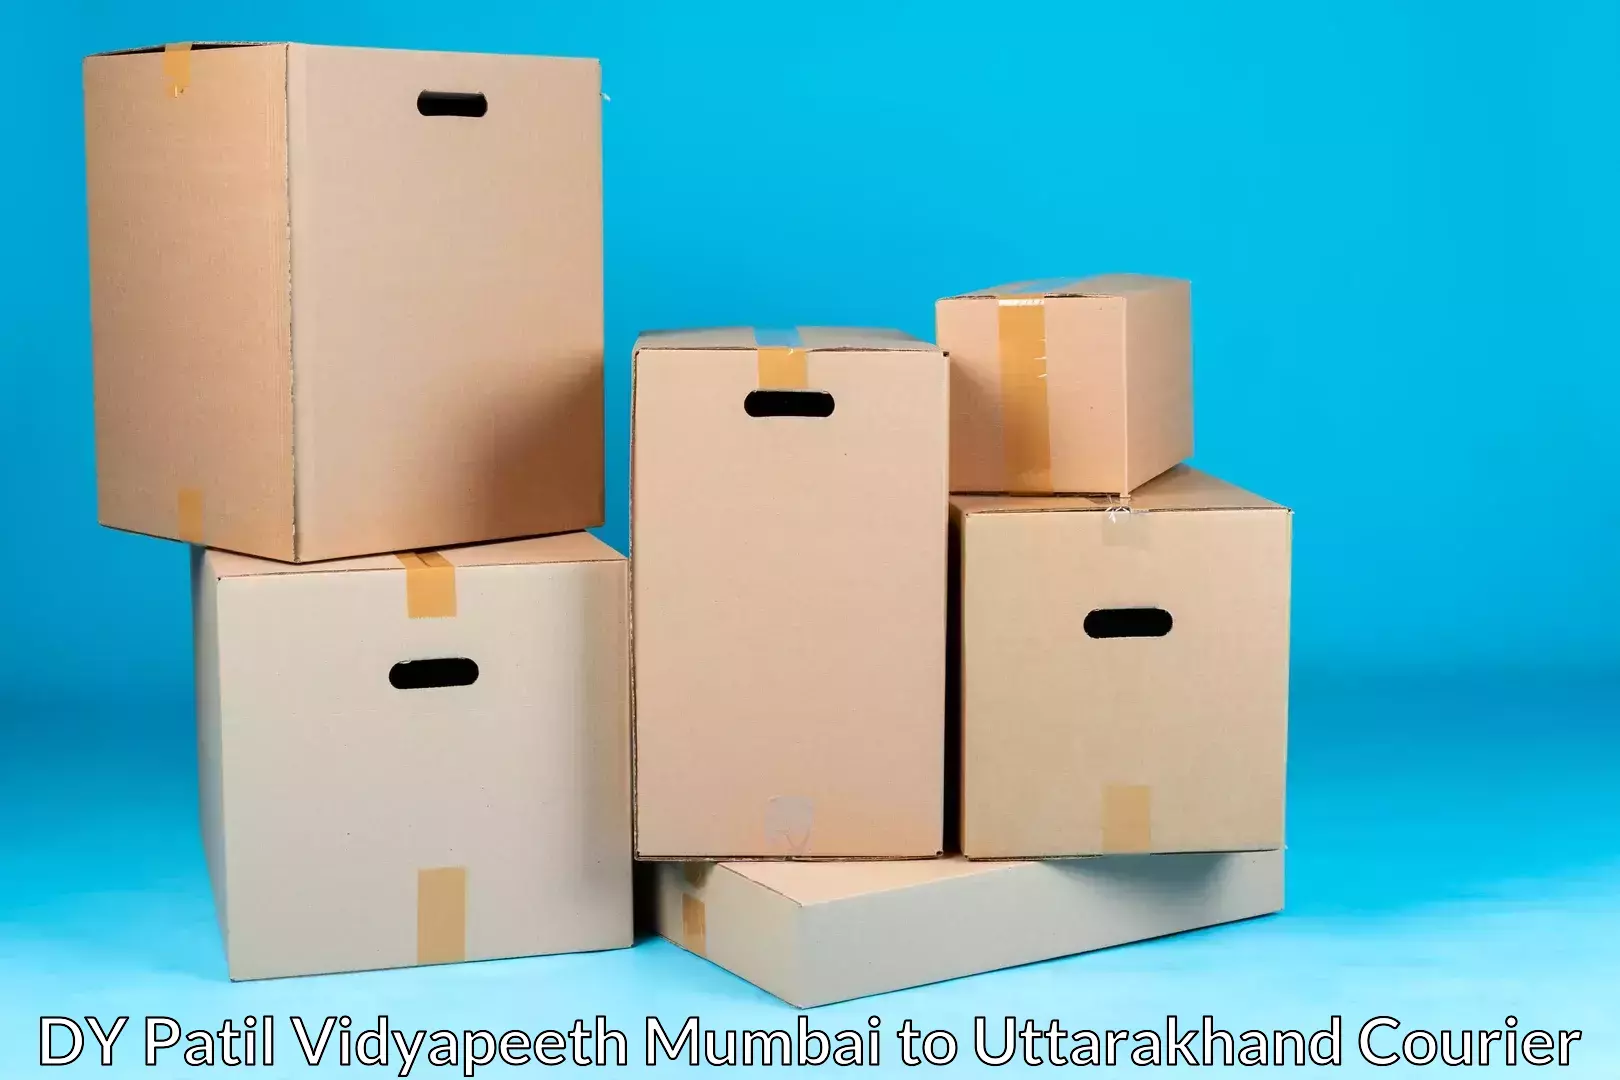 Furniture delivery service DY Patil Vidyapeeth Mumbai to Kotdwara